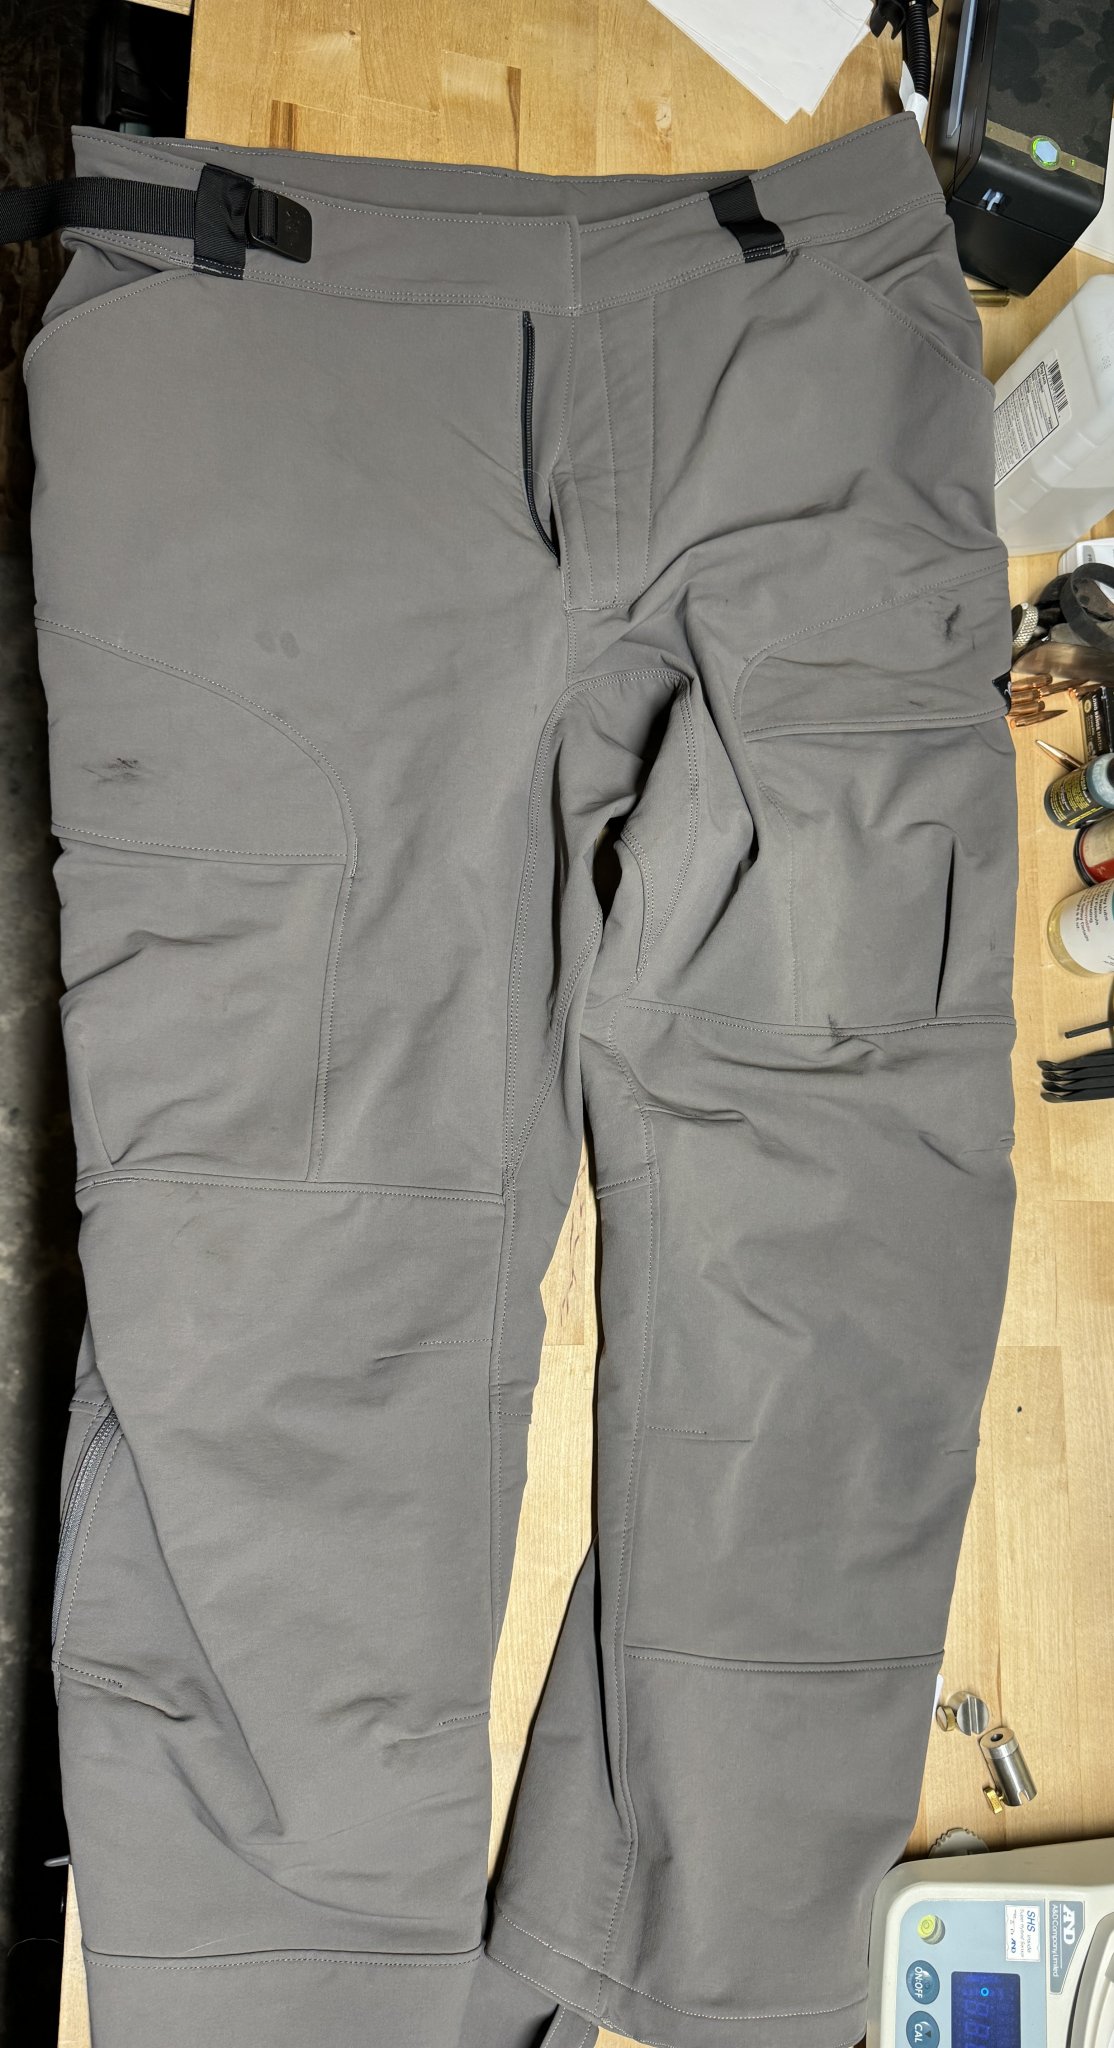 SOLD - stone glacier De Havilland pants size XL Grey | Sniper's Hide Forum